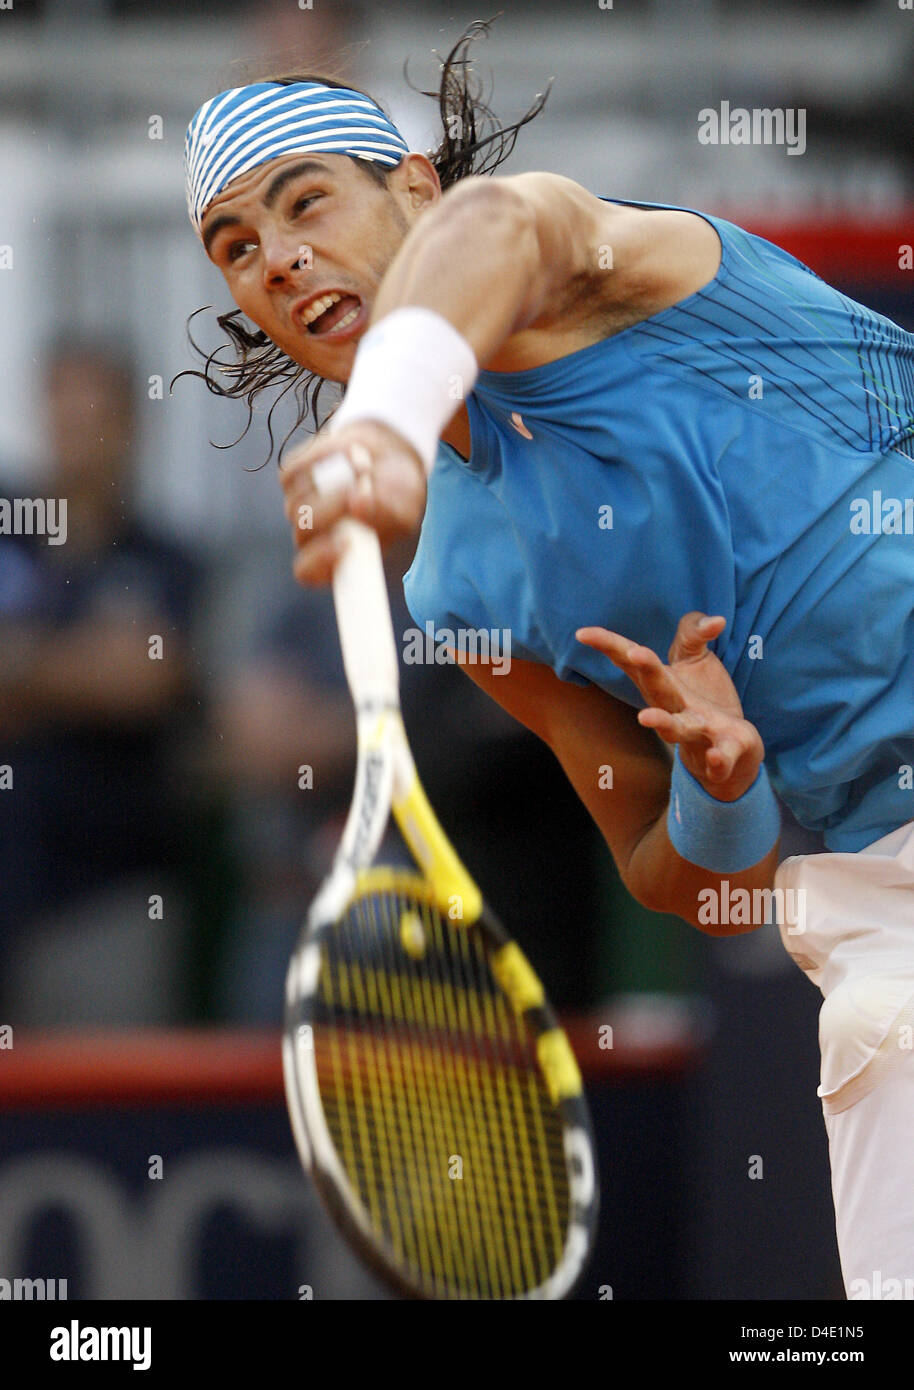 L'Espagnol Rafael Nadal est montré en action pendant le quart de finale match contre son compatriote Moya à l'ATP Masters Series de Hambourg, Allemagne, 16 mai 2008. Nadal a gagné 6-1 et 6-3. Photo : Marcus Brandt Banque D'Images